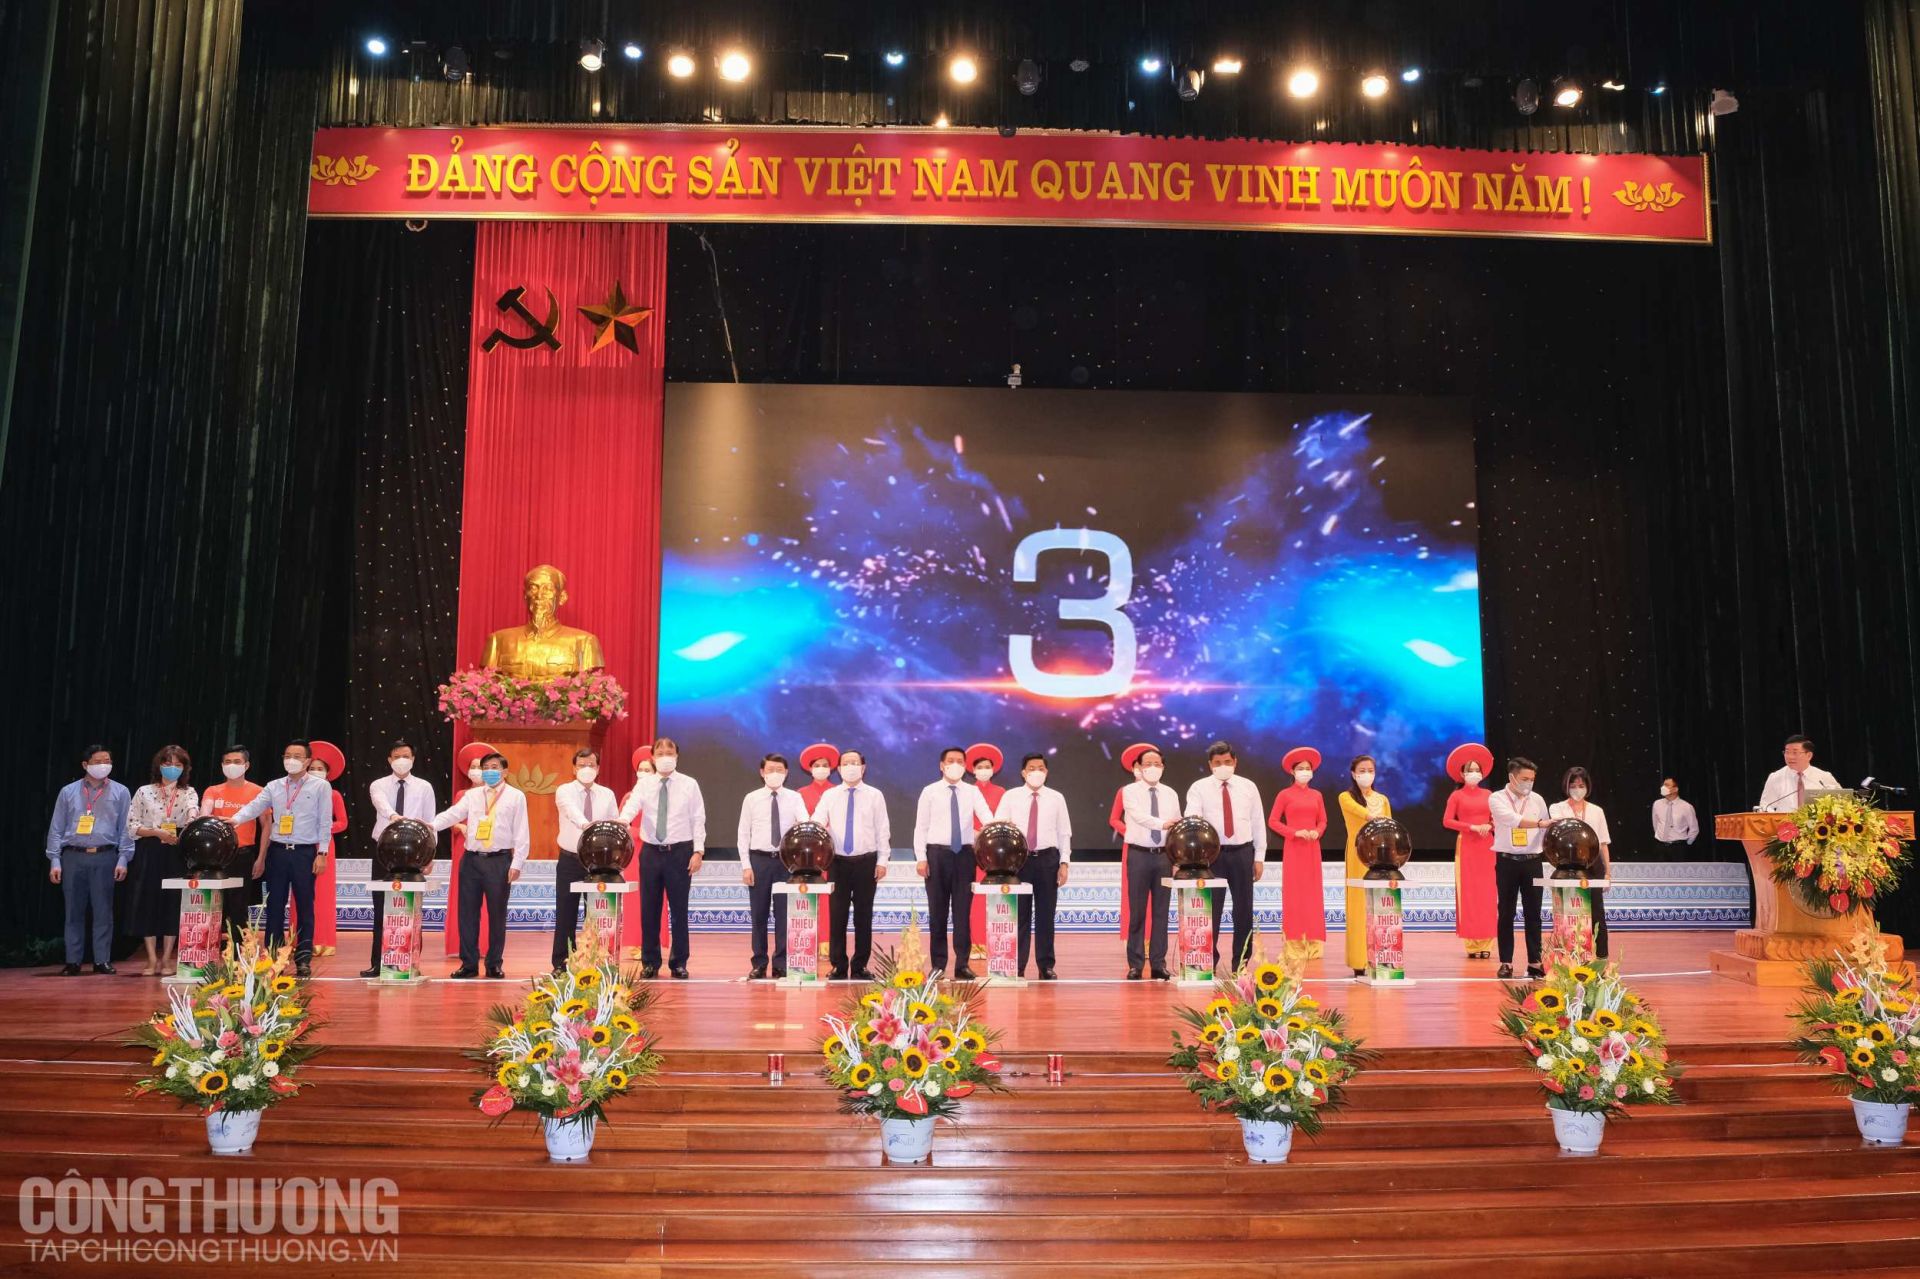 Tỉnh Bắc Giang phối hợp cùng Bộ Công Thương tổ chức nghi lễ Khai trương “Gian hàng vải thiều trên sàn Alibaba.com và các sàn Thương mại điện tử”